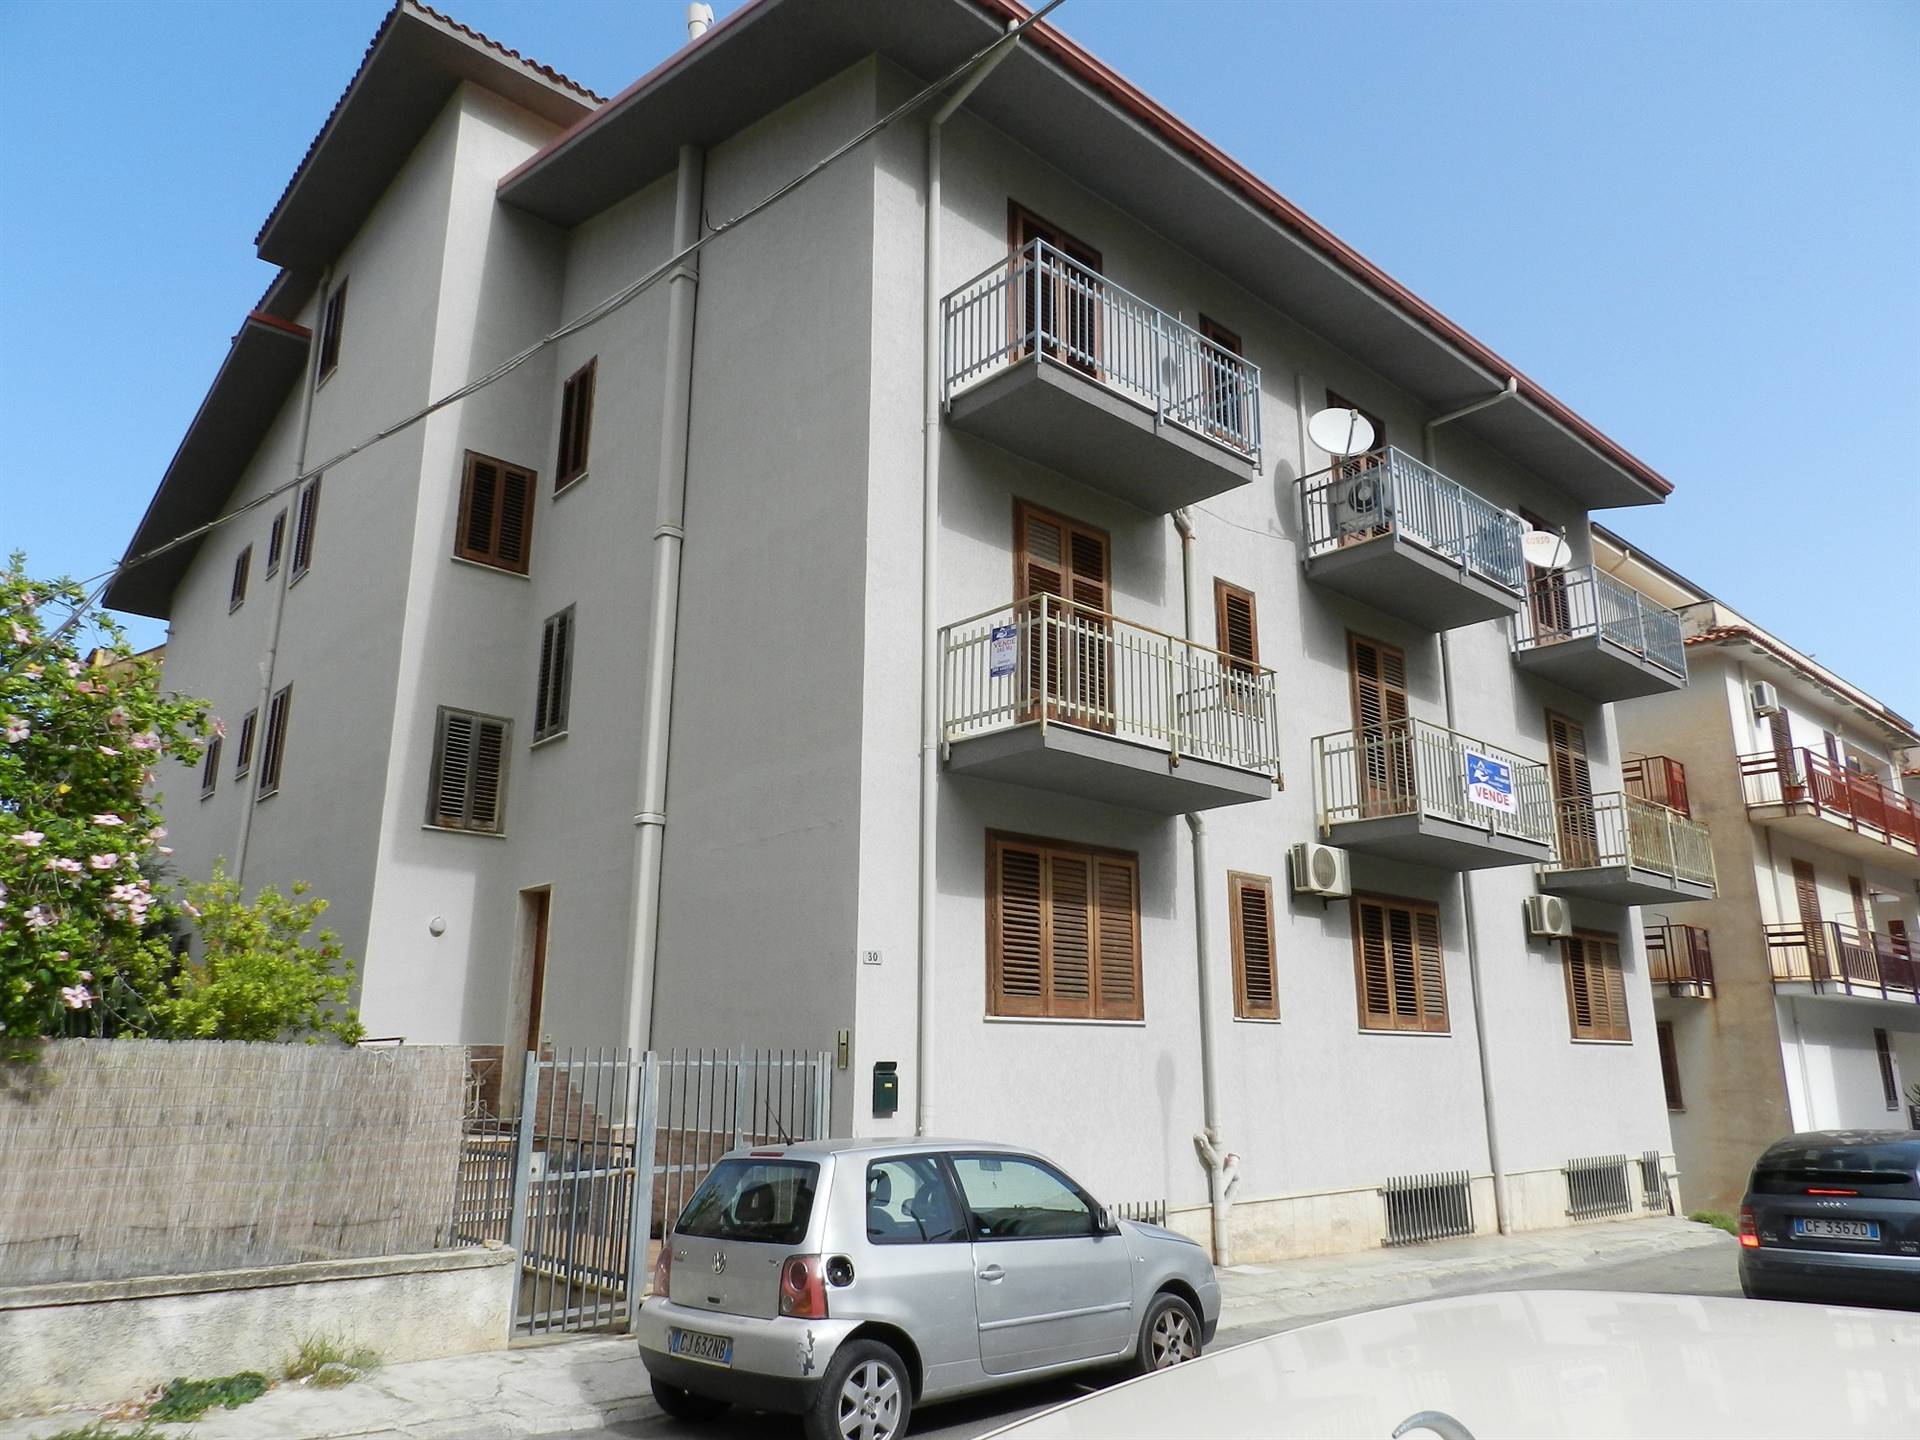 Appartamento in vendita a Partinico, 10 locali, prezzo € 129.000 | CambioCasa.it